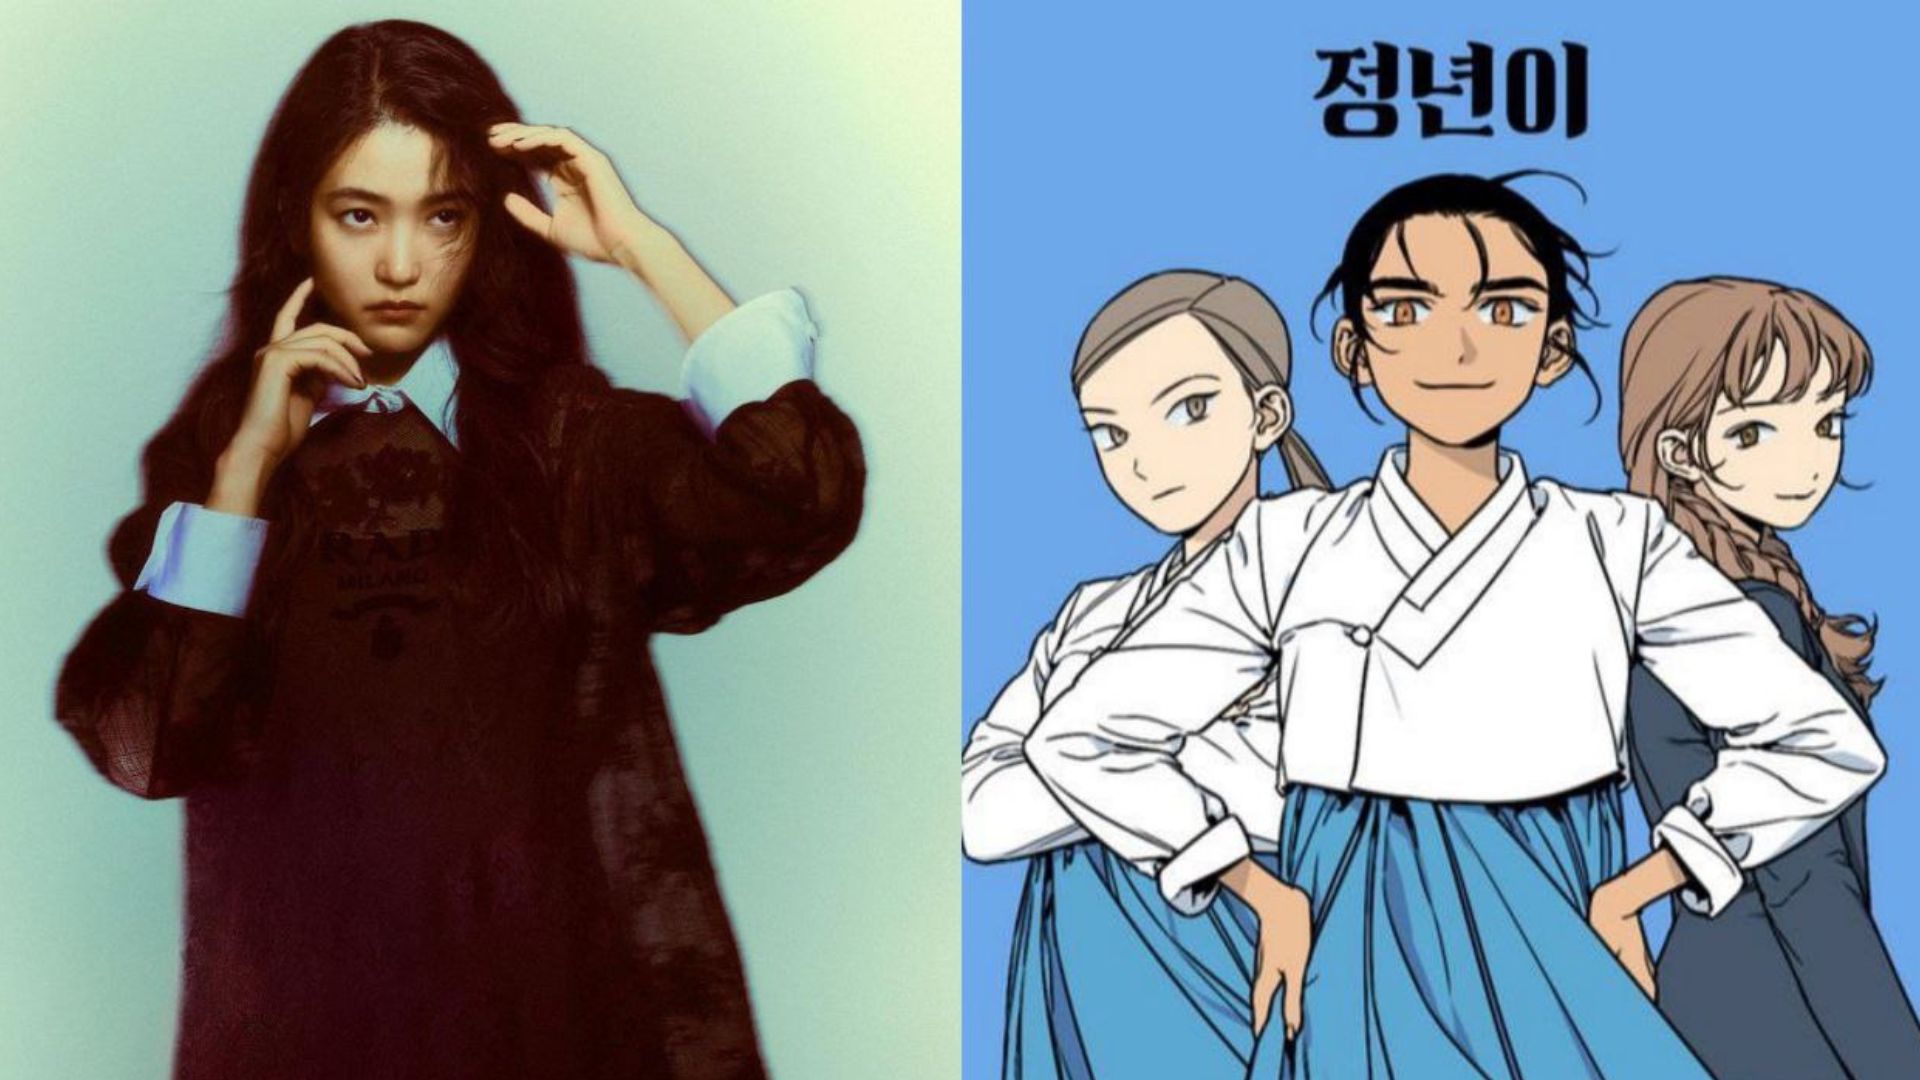 Kim Tae Ri em imagem para a revista ELLE e capa do webtoon ‘Jeong Nyeon’ escrito por Seo Ireh e ilustrado por Namon | Photoshoot / ELLE Korea / Naver Series